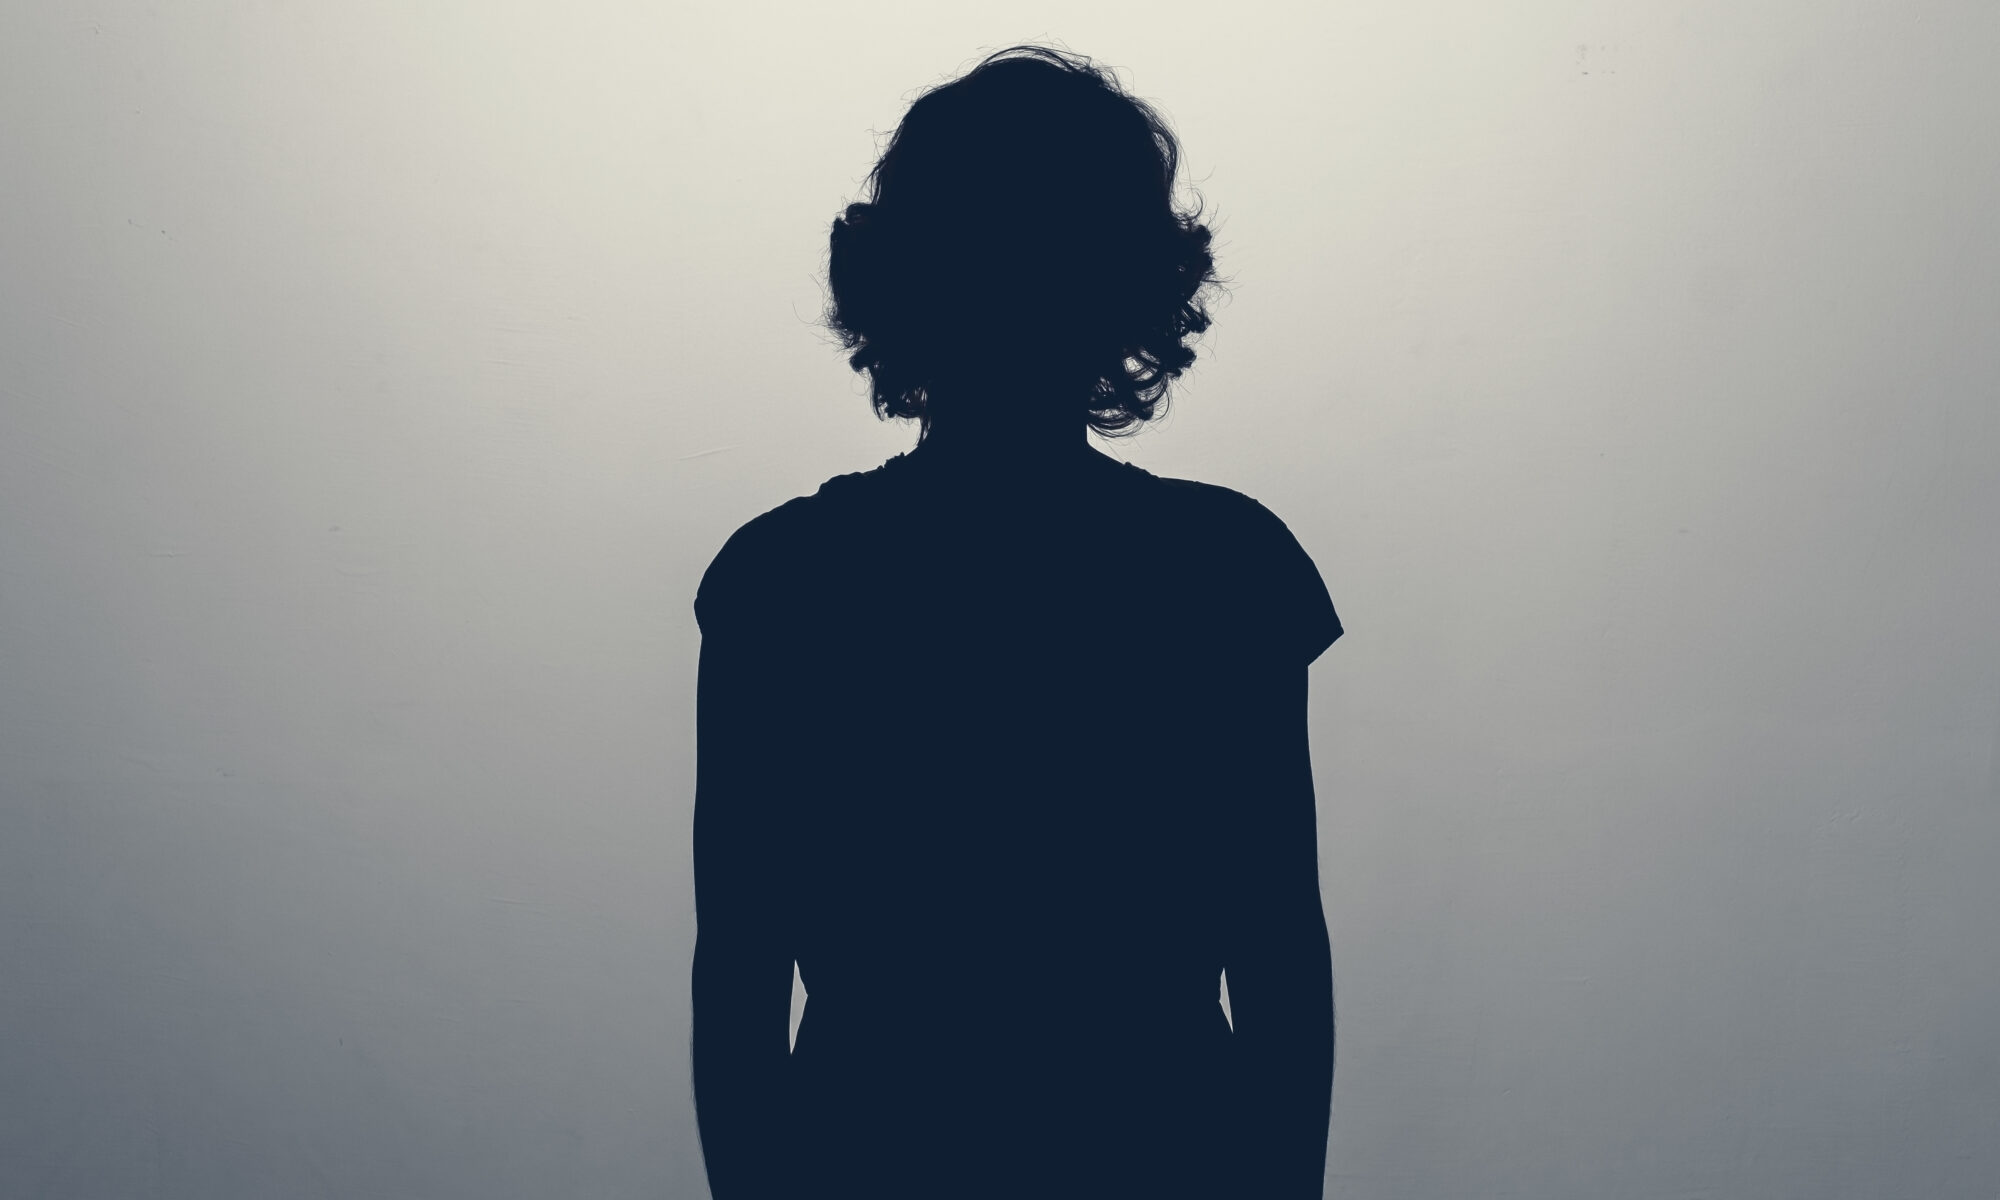 Unknown female person silhouette in studio.